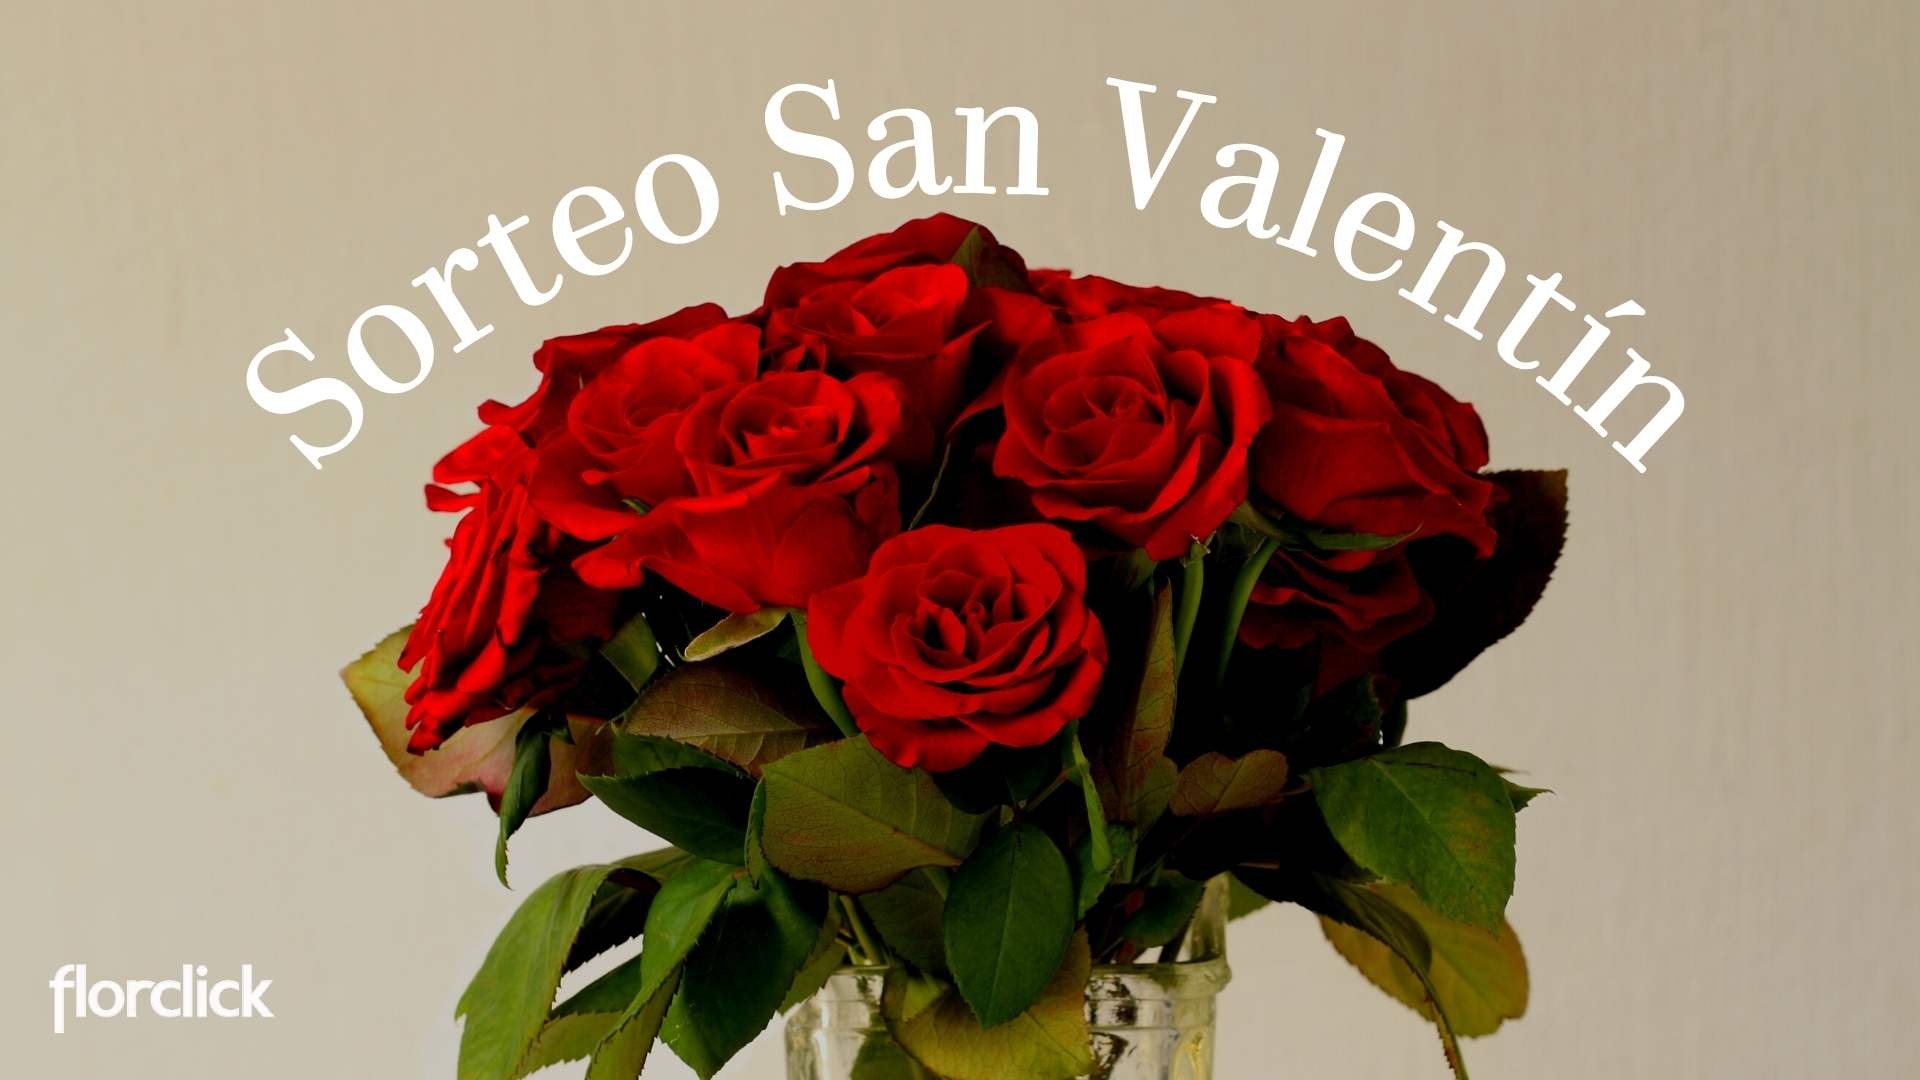 Sorteo San Valentín redes sociales